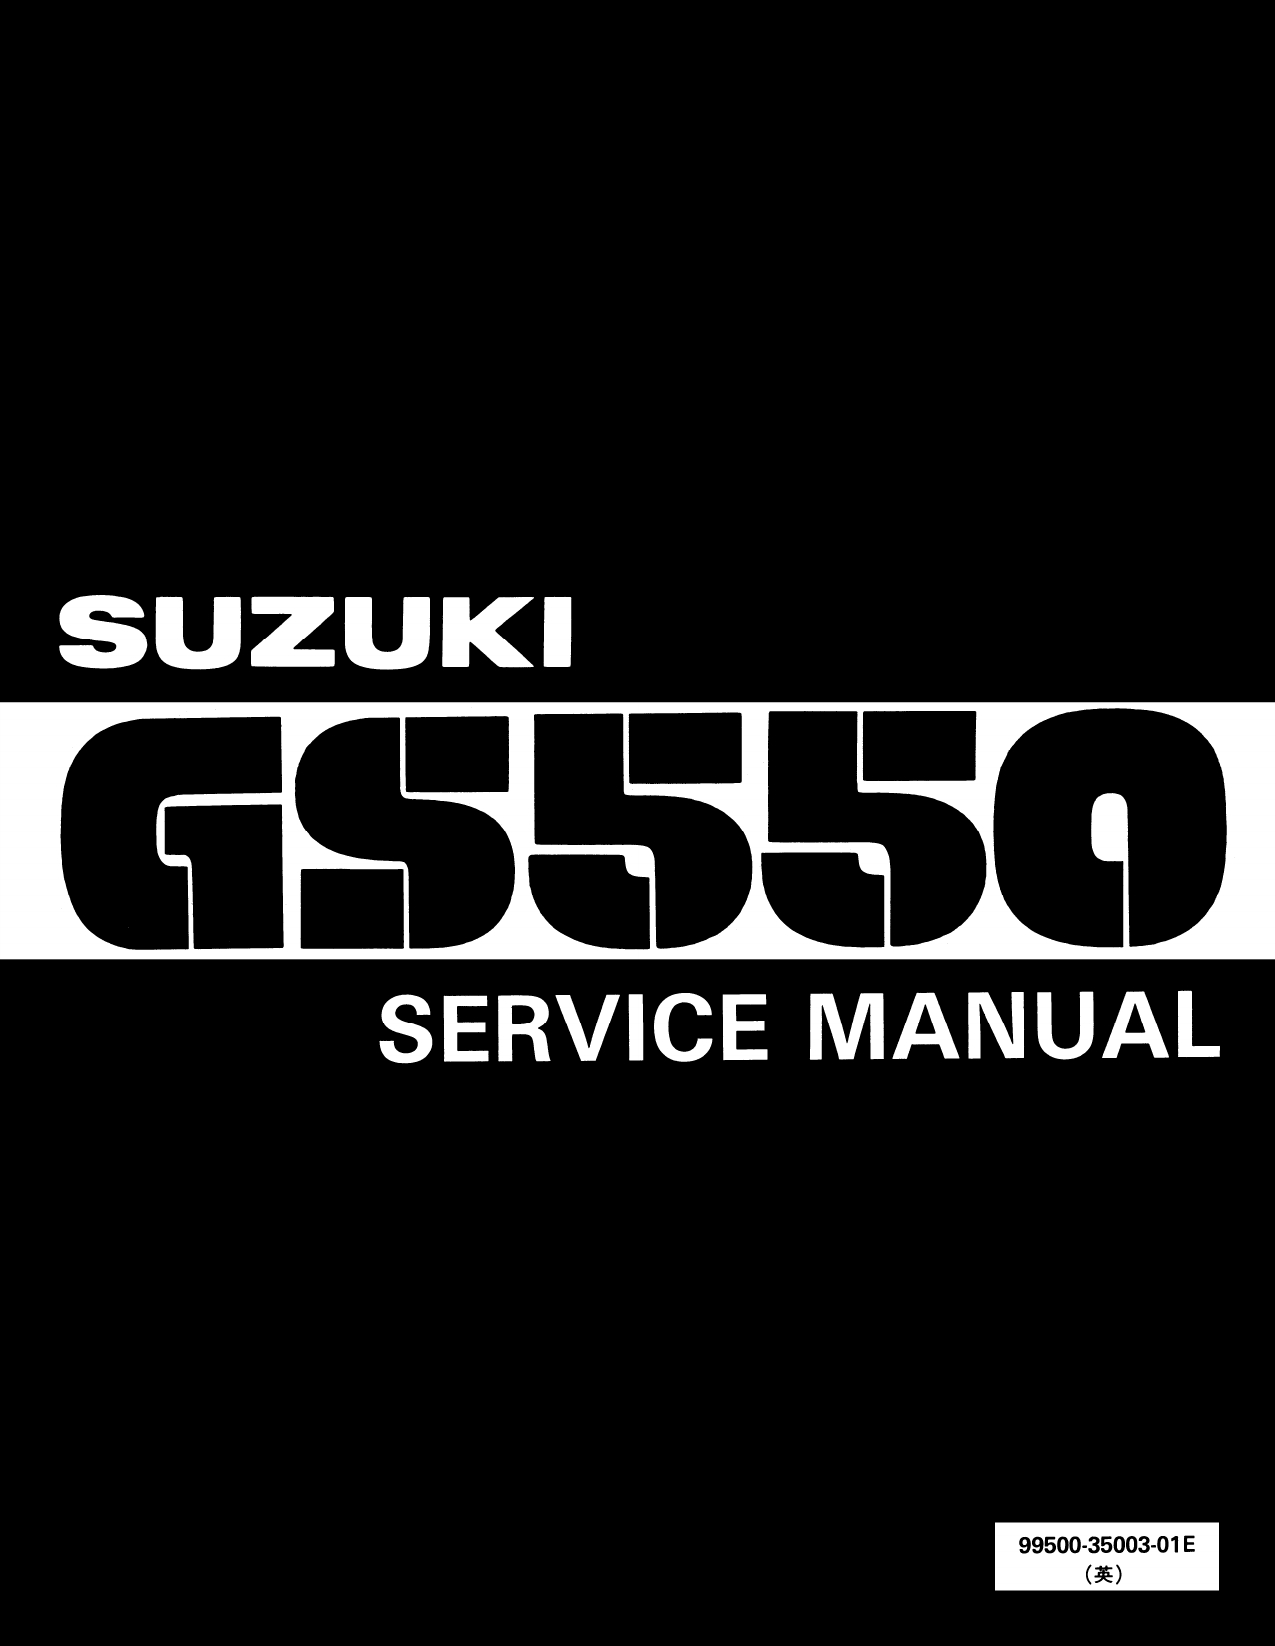 1977-1982 Suzuki GS550 service manual Preview image 1